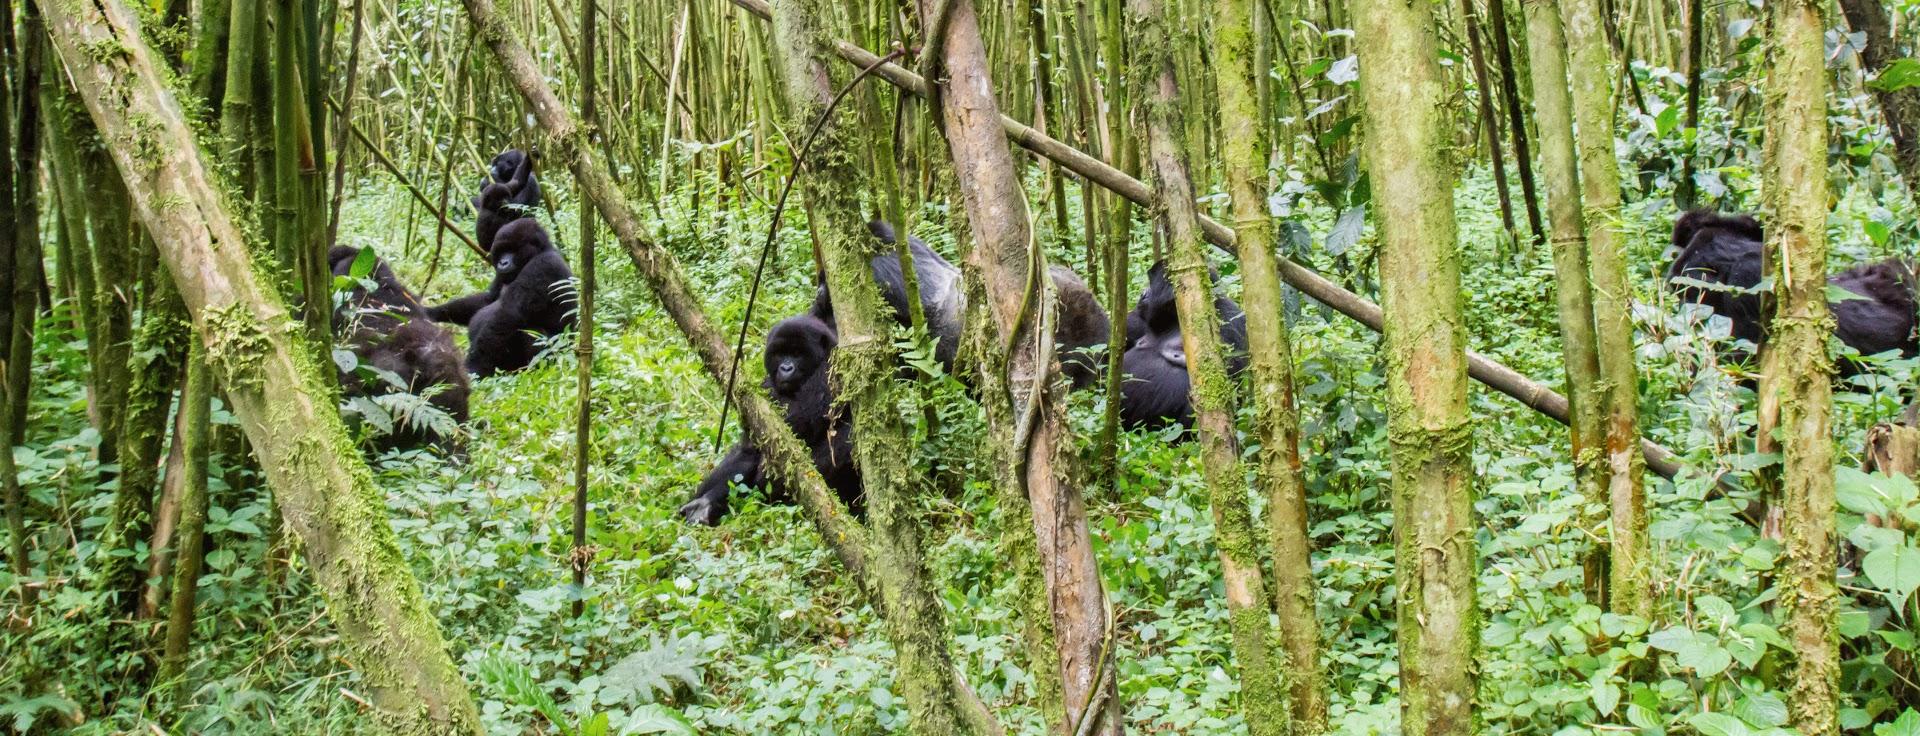 Rwanda Walking & Gorilla Trekking